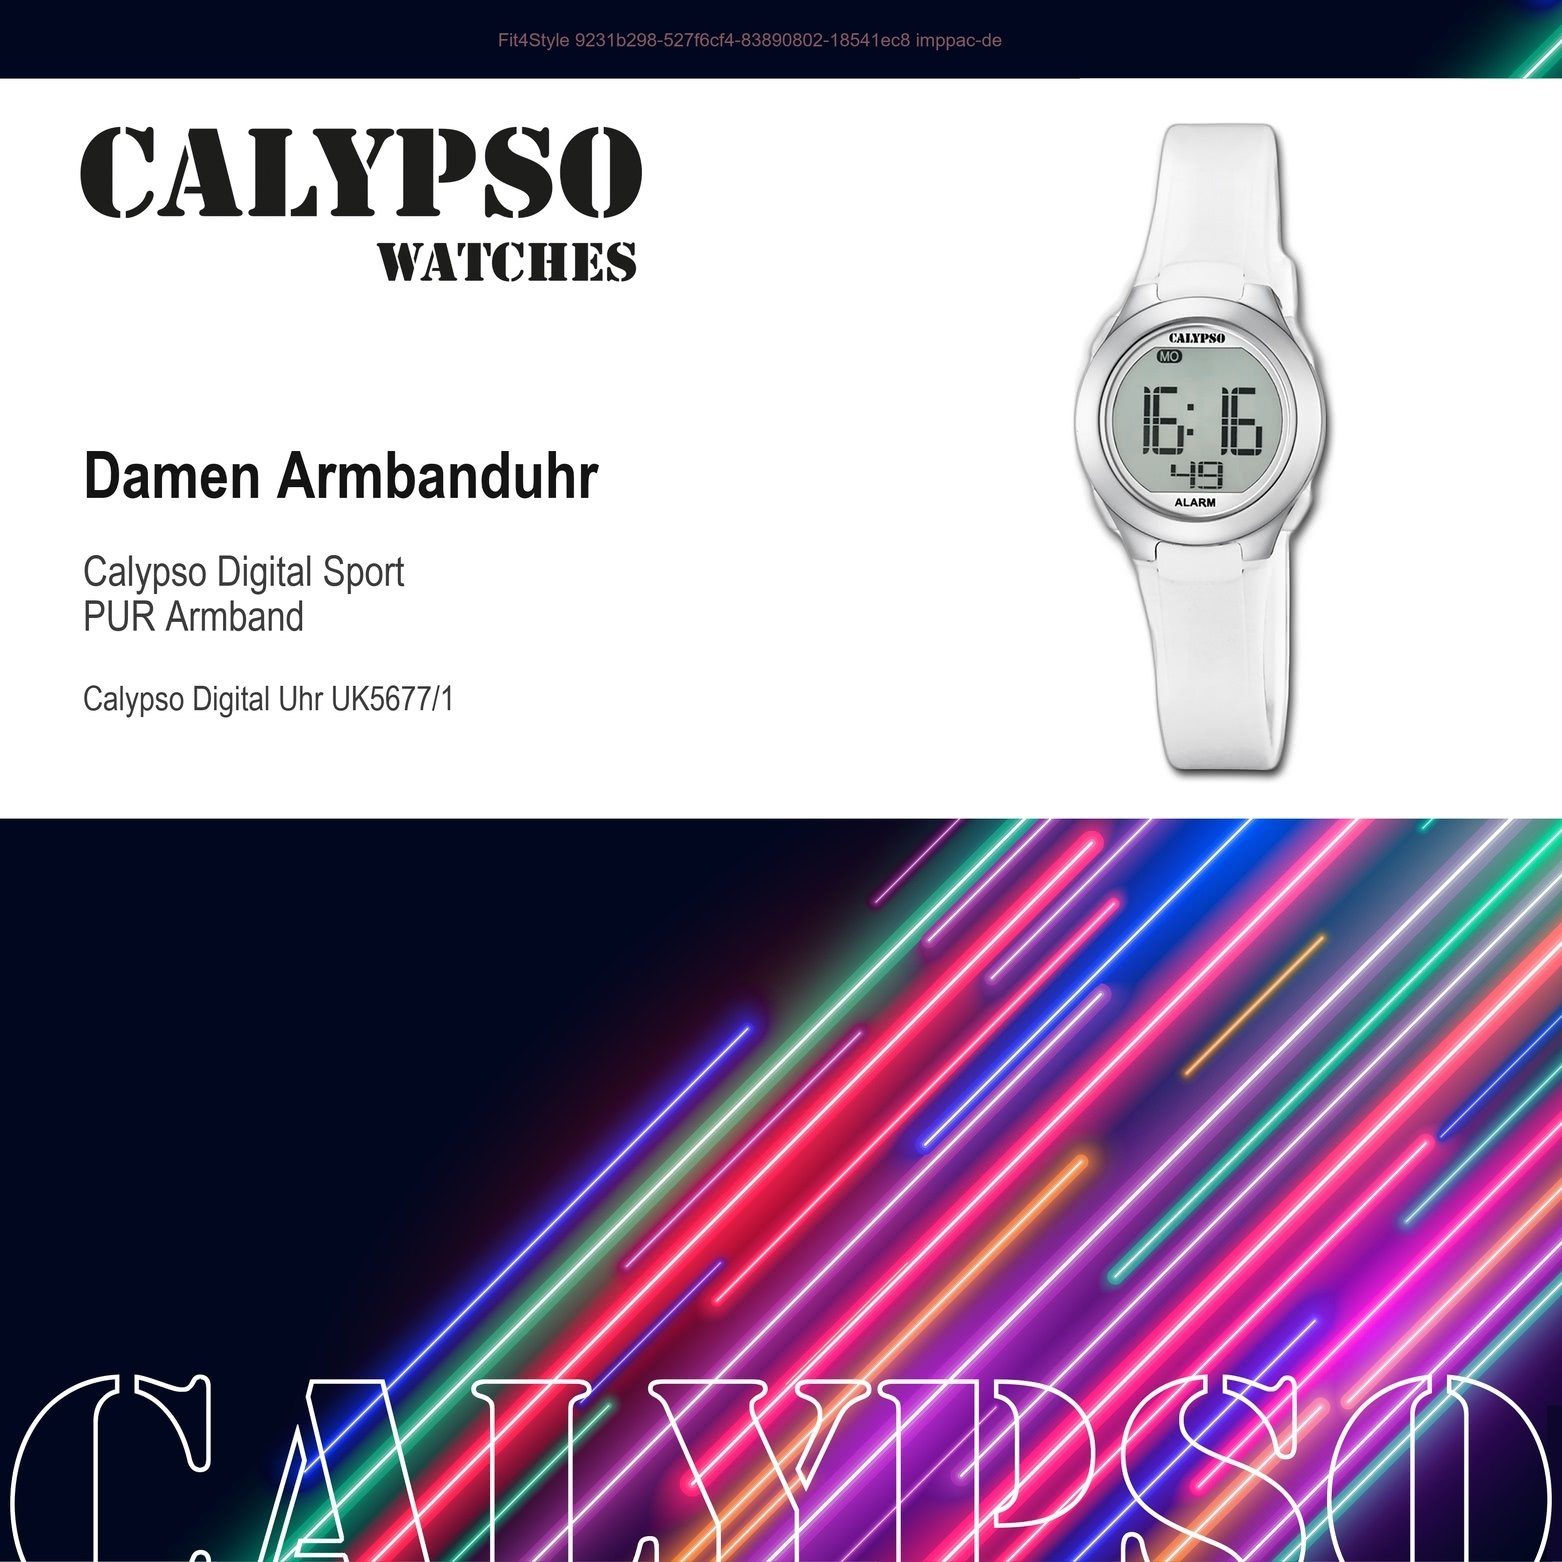 K5677/1 Calypso Uhr PURarmband Damen WATCHES Damen weiß, CALYPSO Kunststoffband, Sport rund, Armbanduhr Digitaluhr